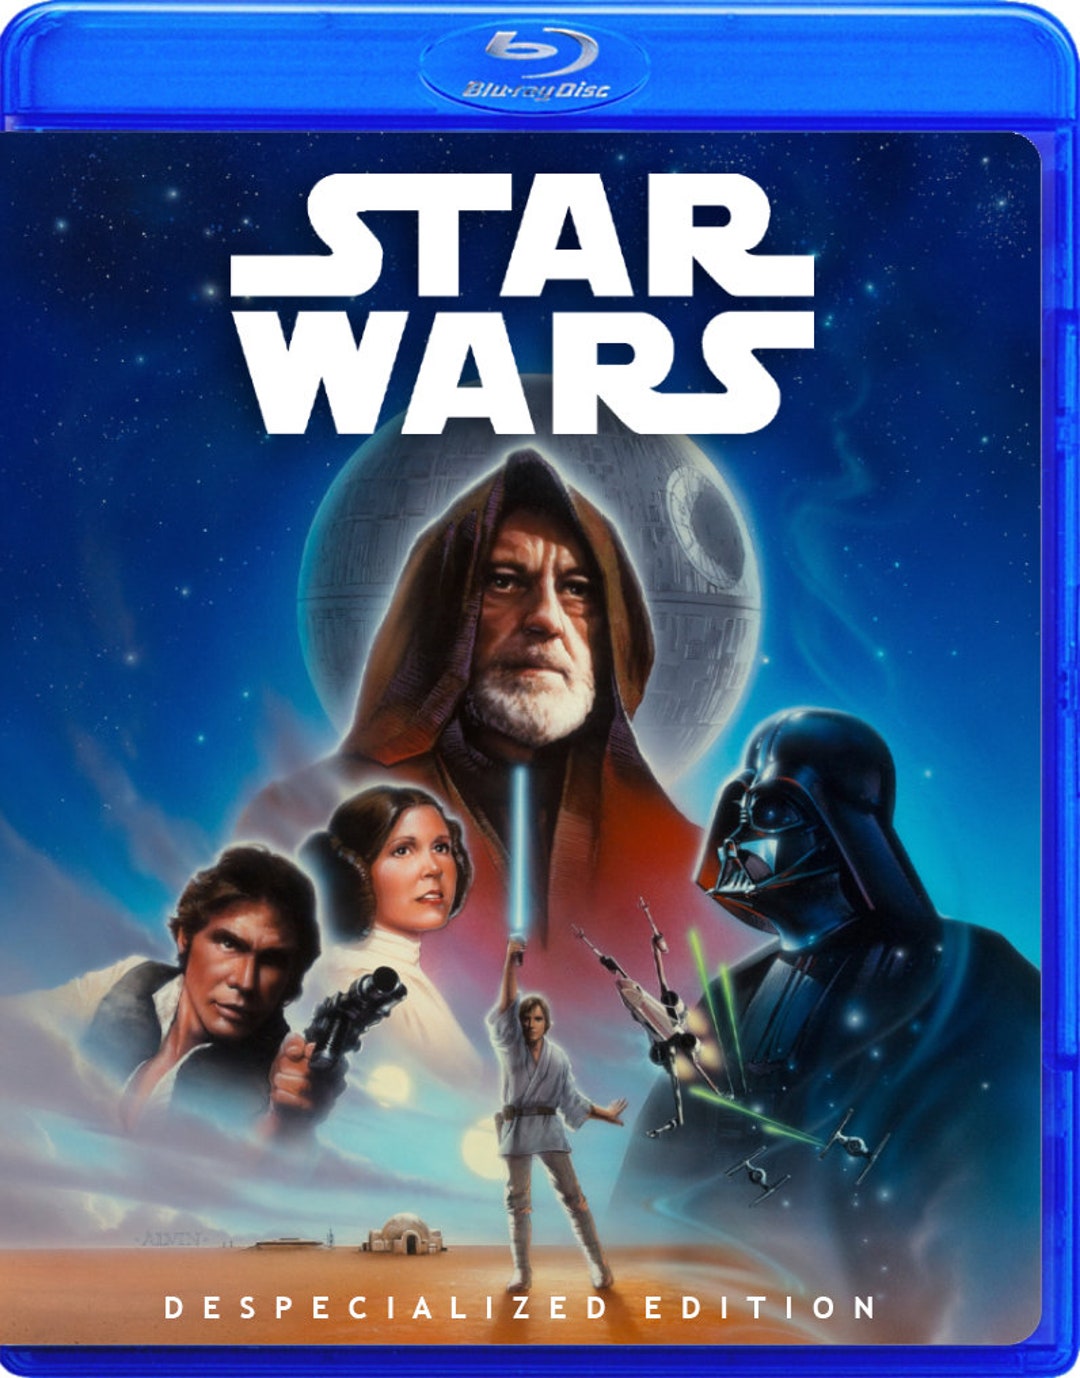 Star Wars 1977 Copertina Blu-ray personalizzata in edizione despecializzata  senza disco Blu-ray -  Italia